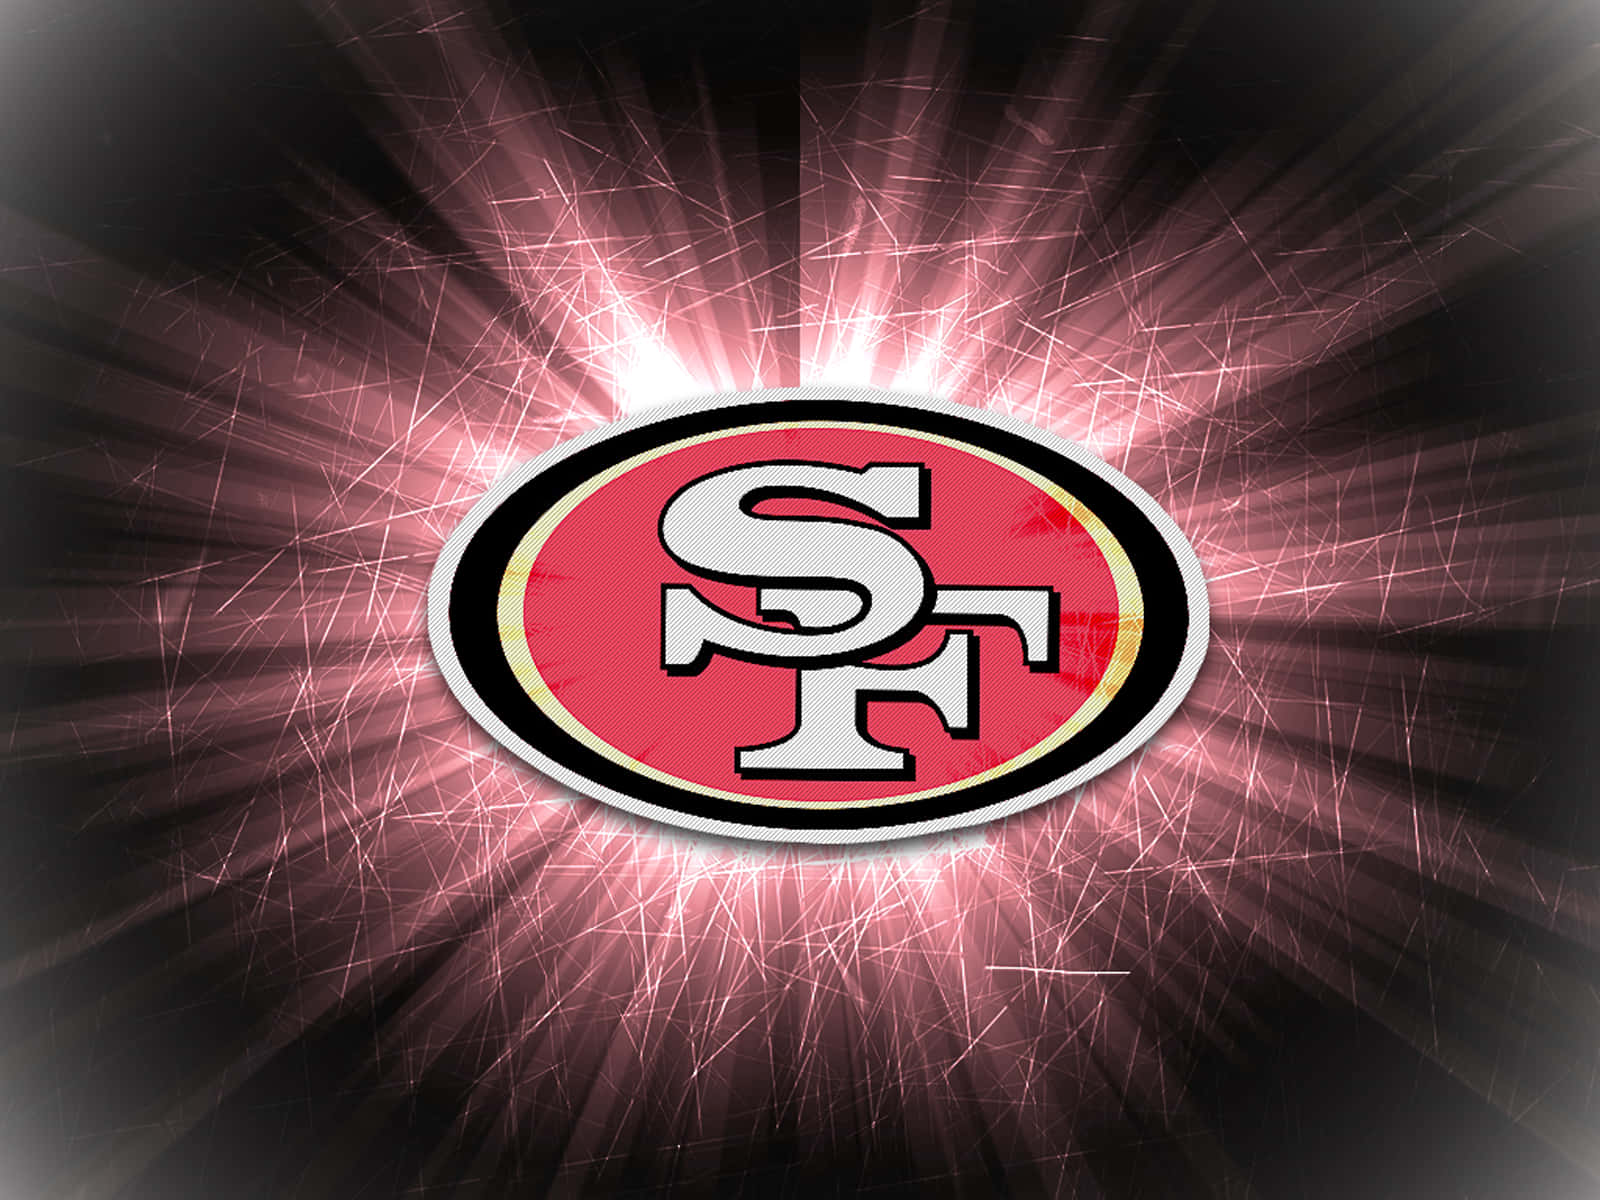 Venhamcomo Uma Equipe E Conquistem - Juntem-se A Nós No Espírito Do San Francisco 49ers!